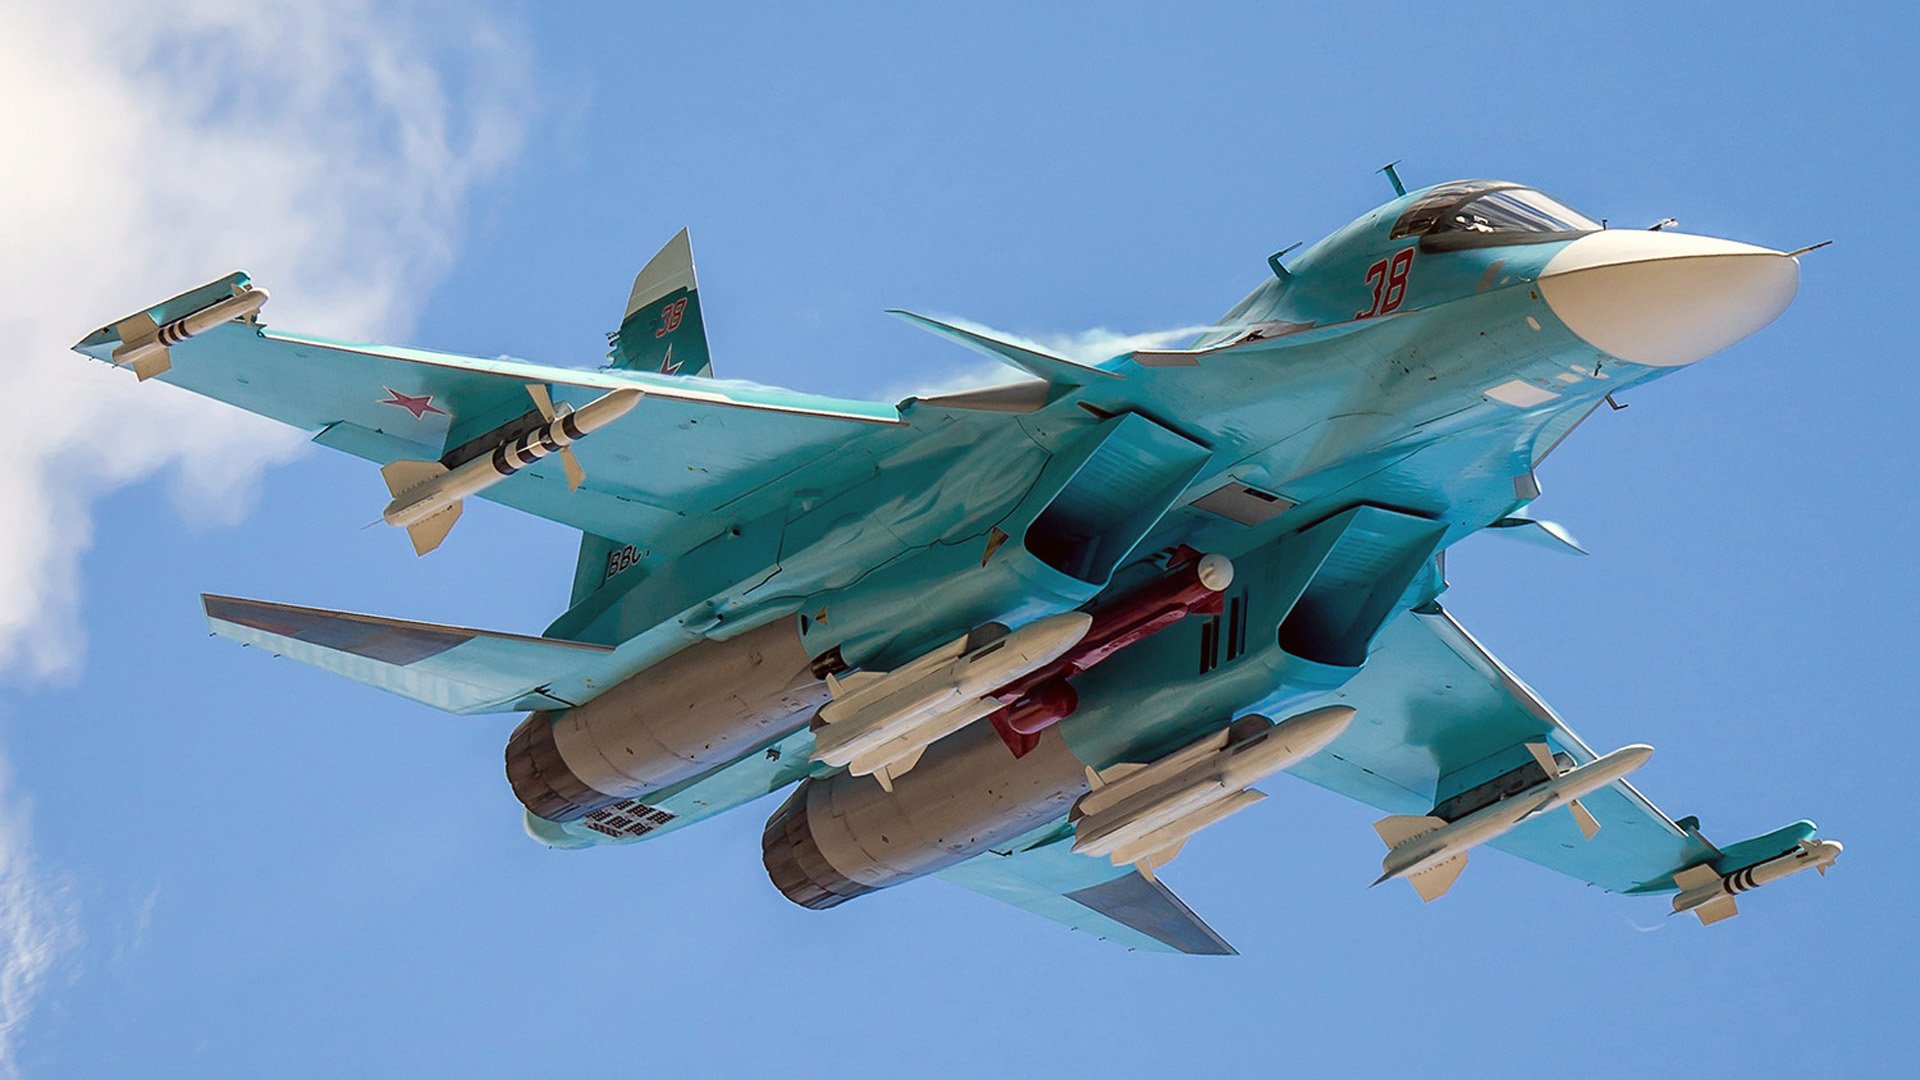 Συναγερμός στη Ρωσία: Καθηλώνονται όλα τα Su-34 μετά από την συντριβή!